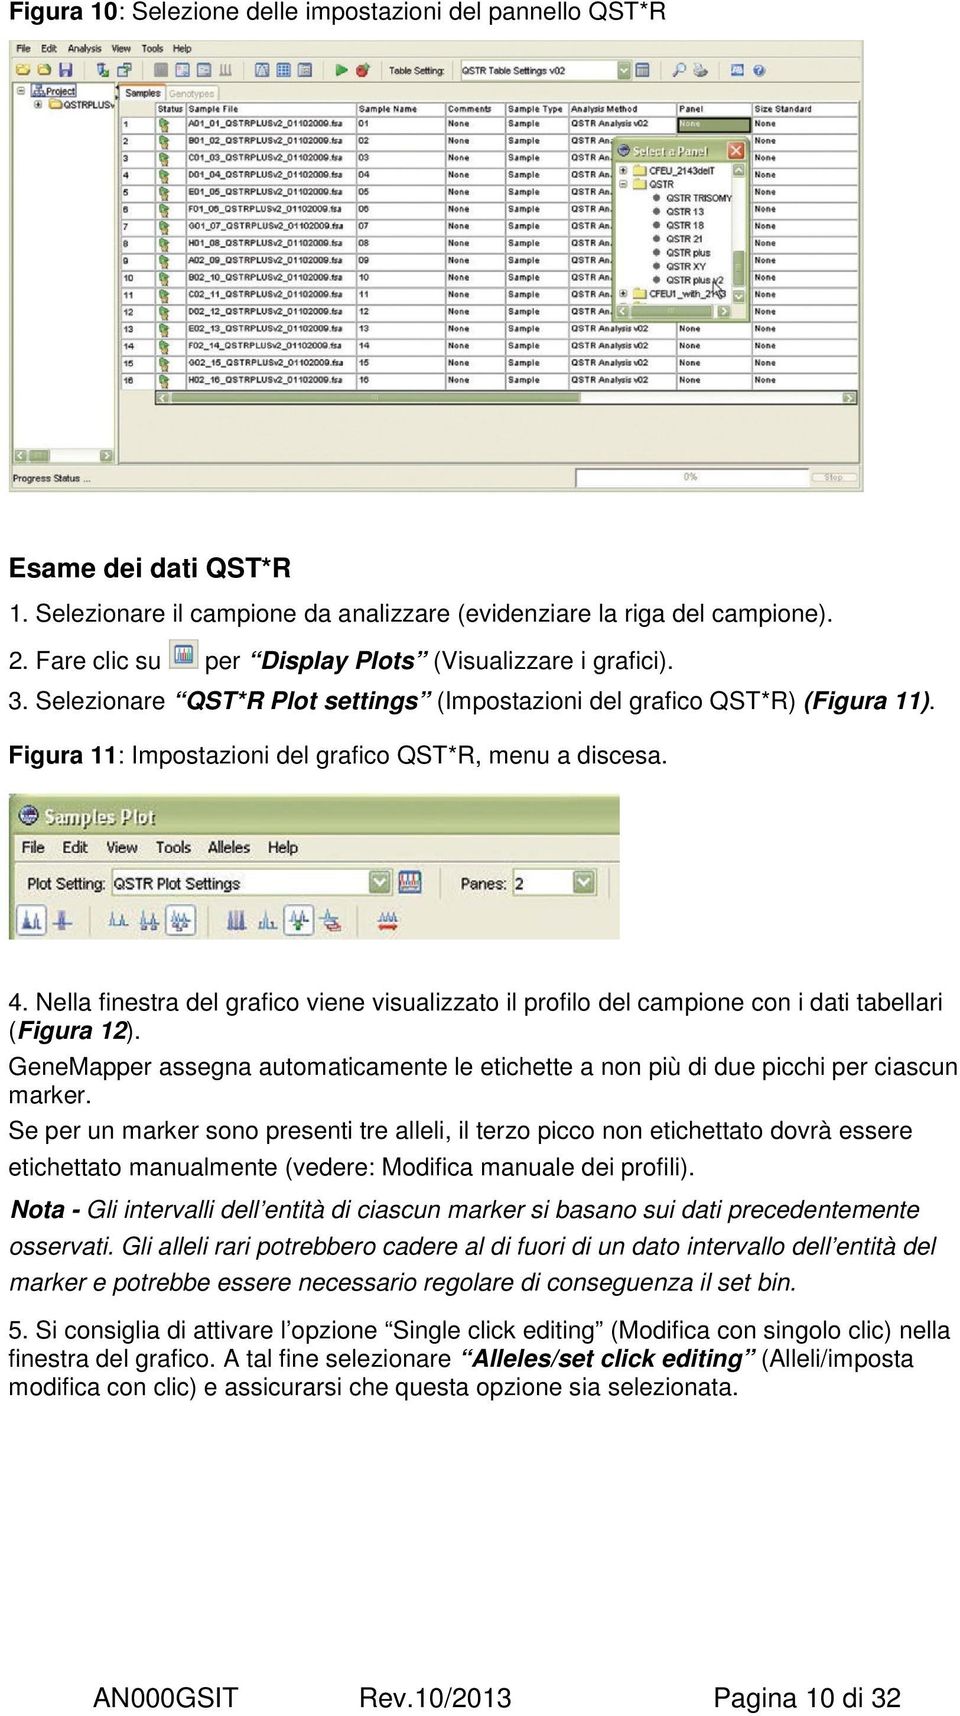 Nella finestra del grafico viene visualizzato il profilo del campione con i dati tabellari (Figura 12). GeneMapper assegna automaticamente le etichette a non più di due picchi per ciascun marker.